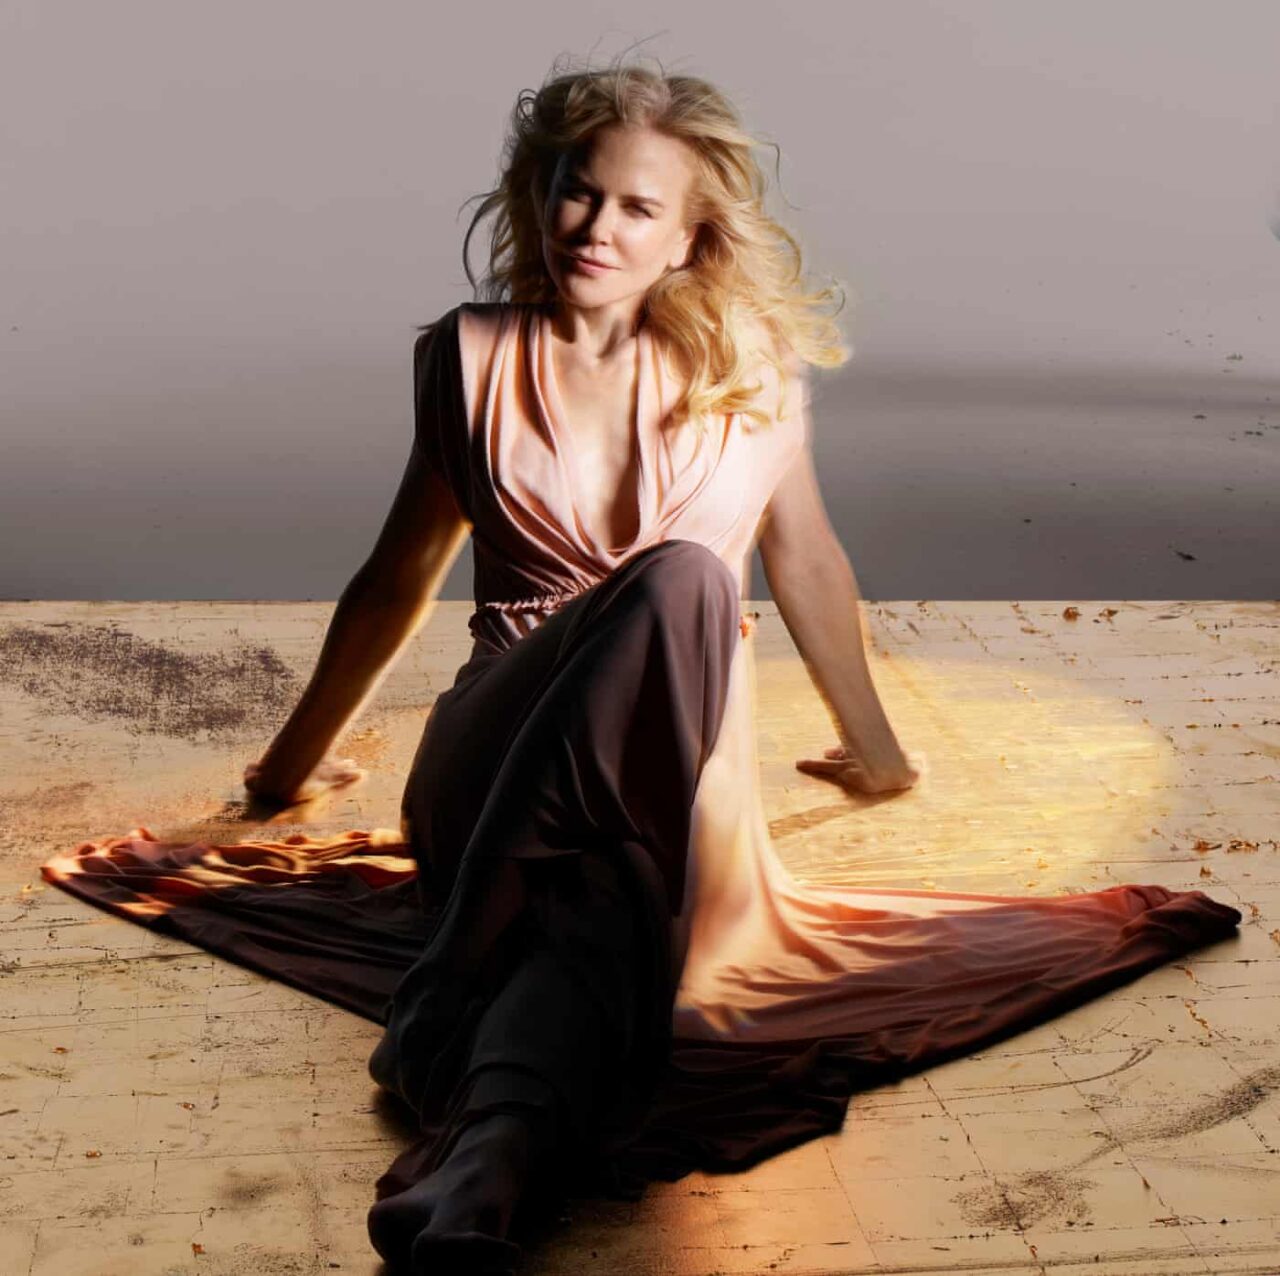 ‘No voy a la deriva’: Nicole Kidman habla sobre la fama, la familia y lo que le quita el sueño